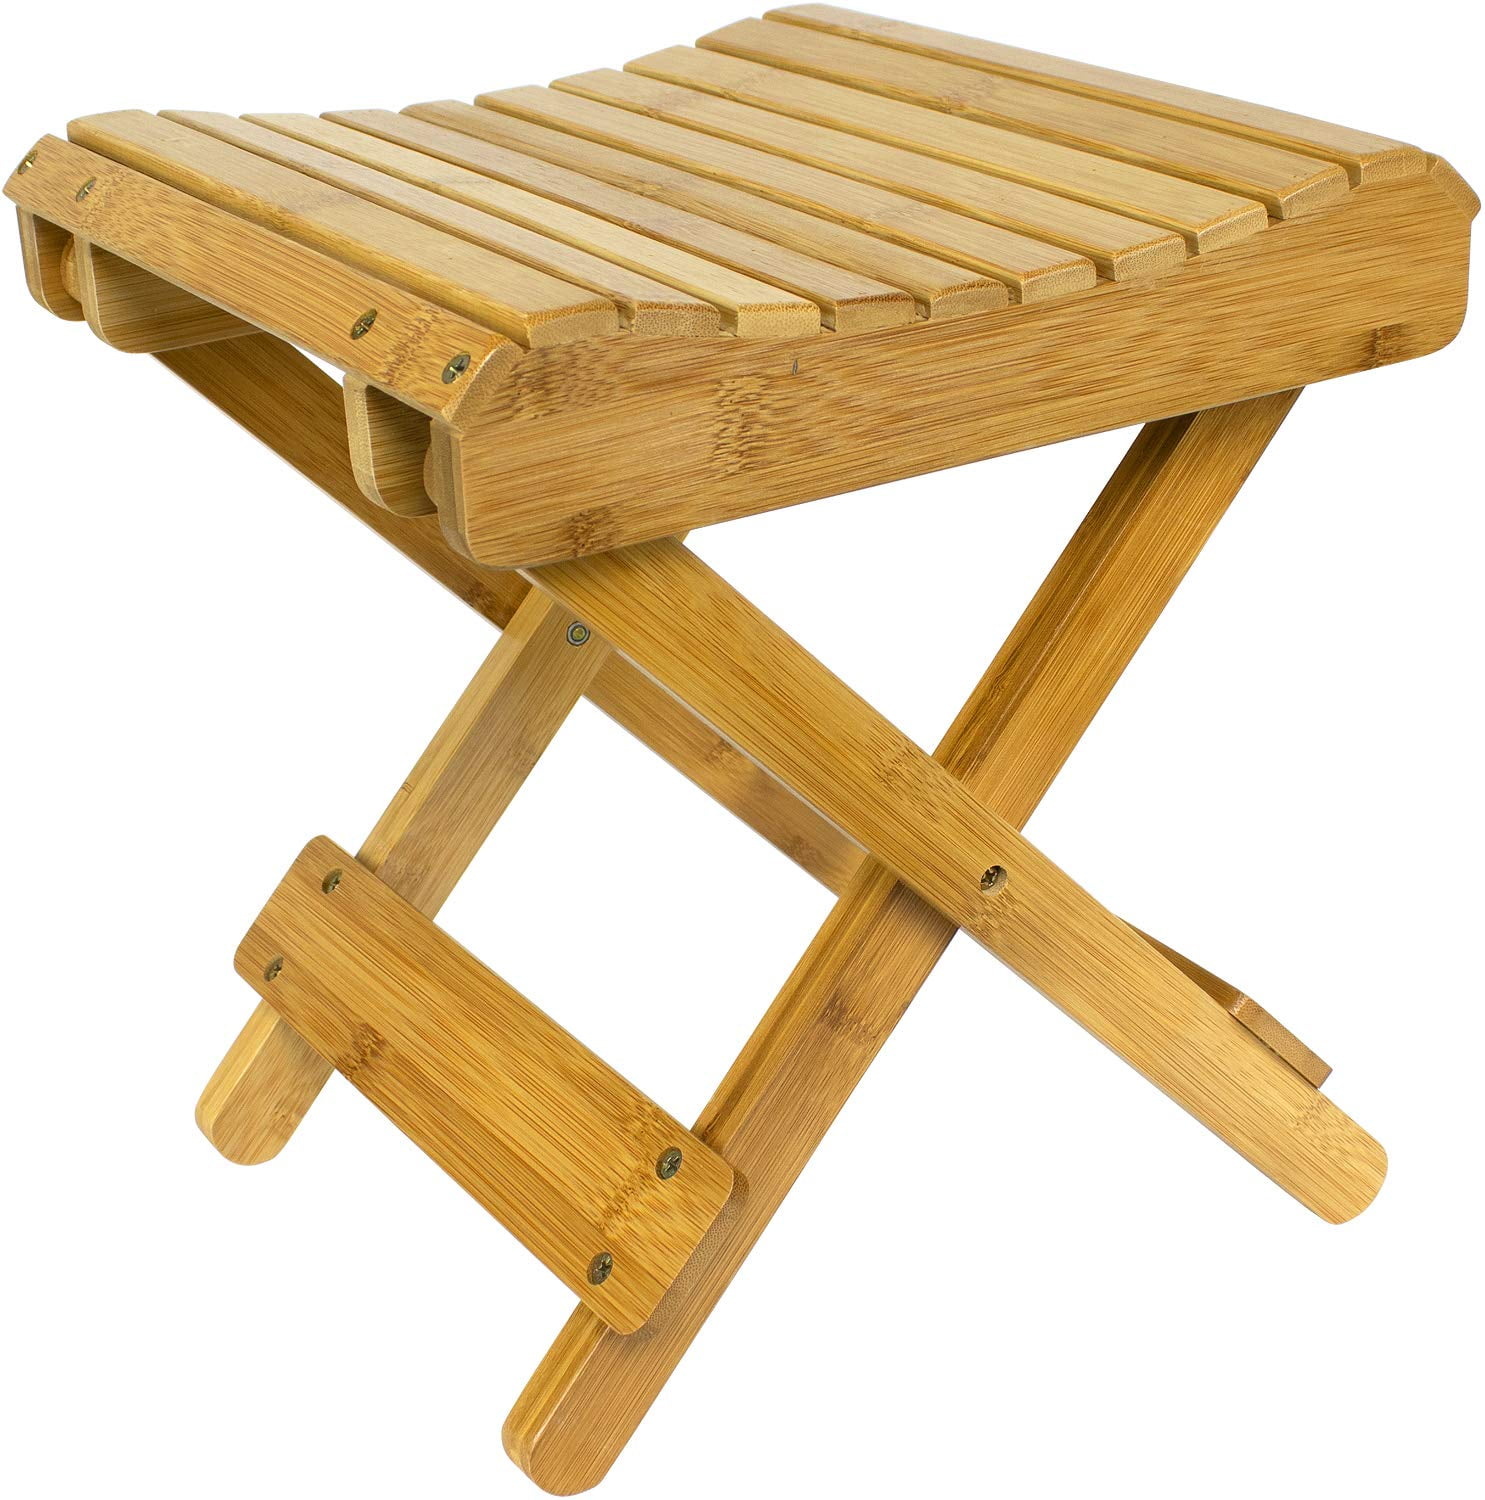 Teak Shower Bench Stool Wood Bath Spa Seat Bathtub Chair Heavy Duty Furniture 